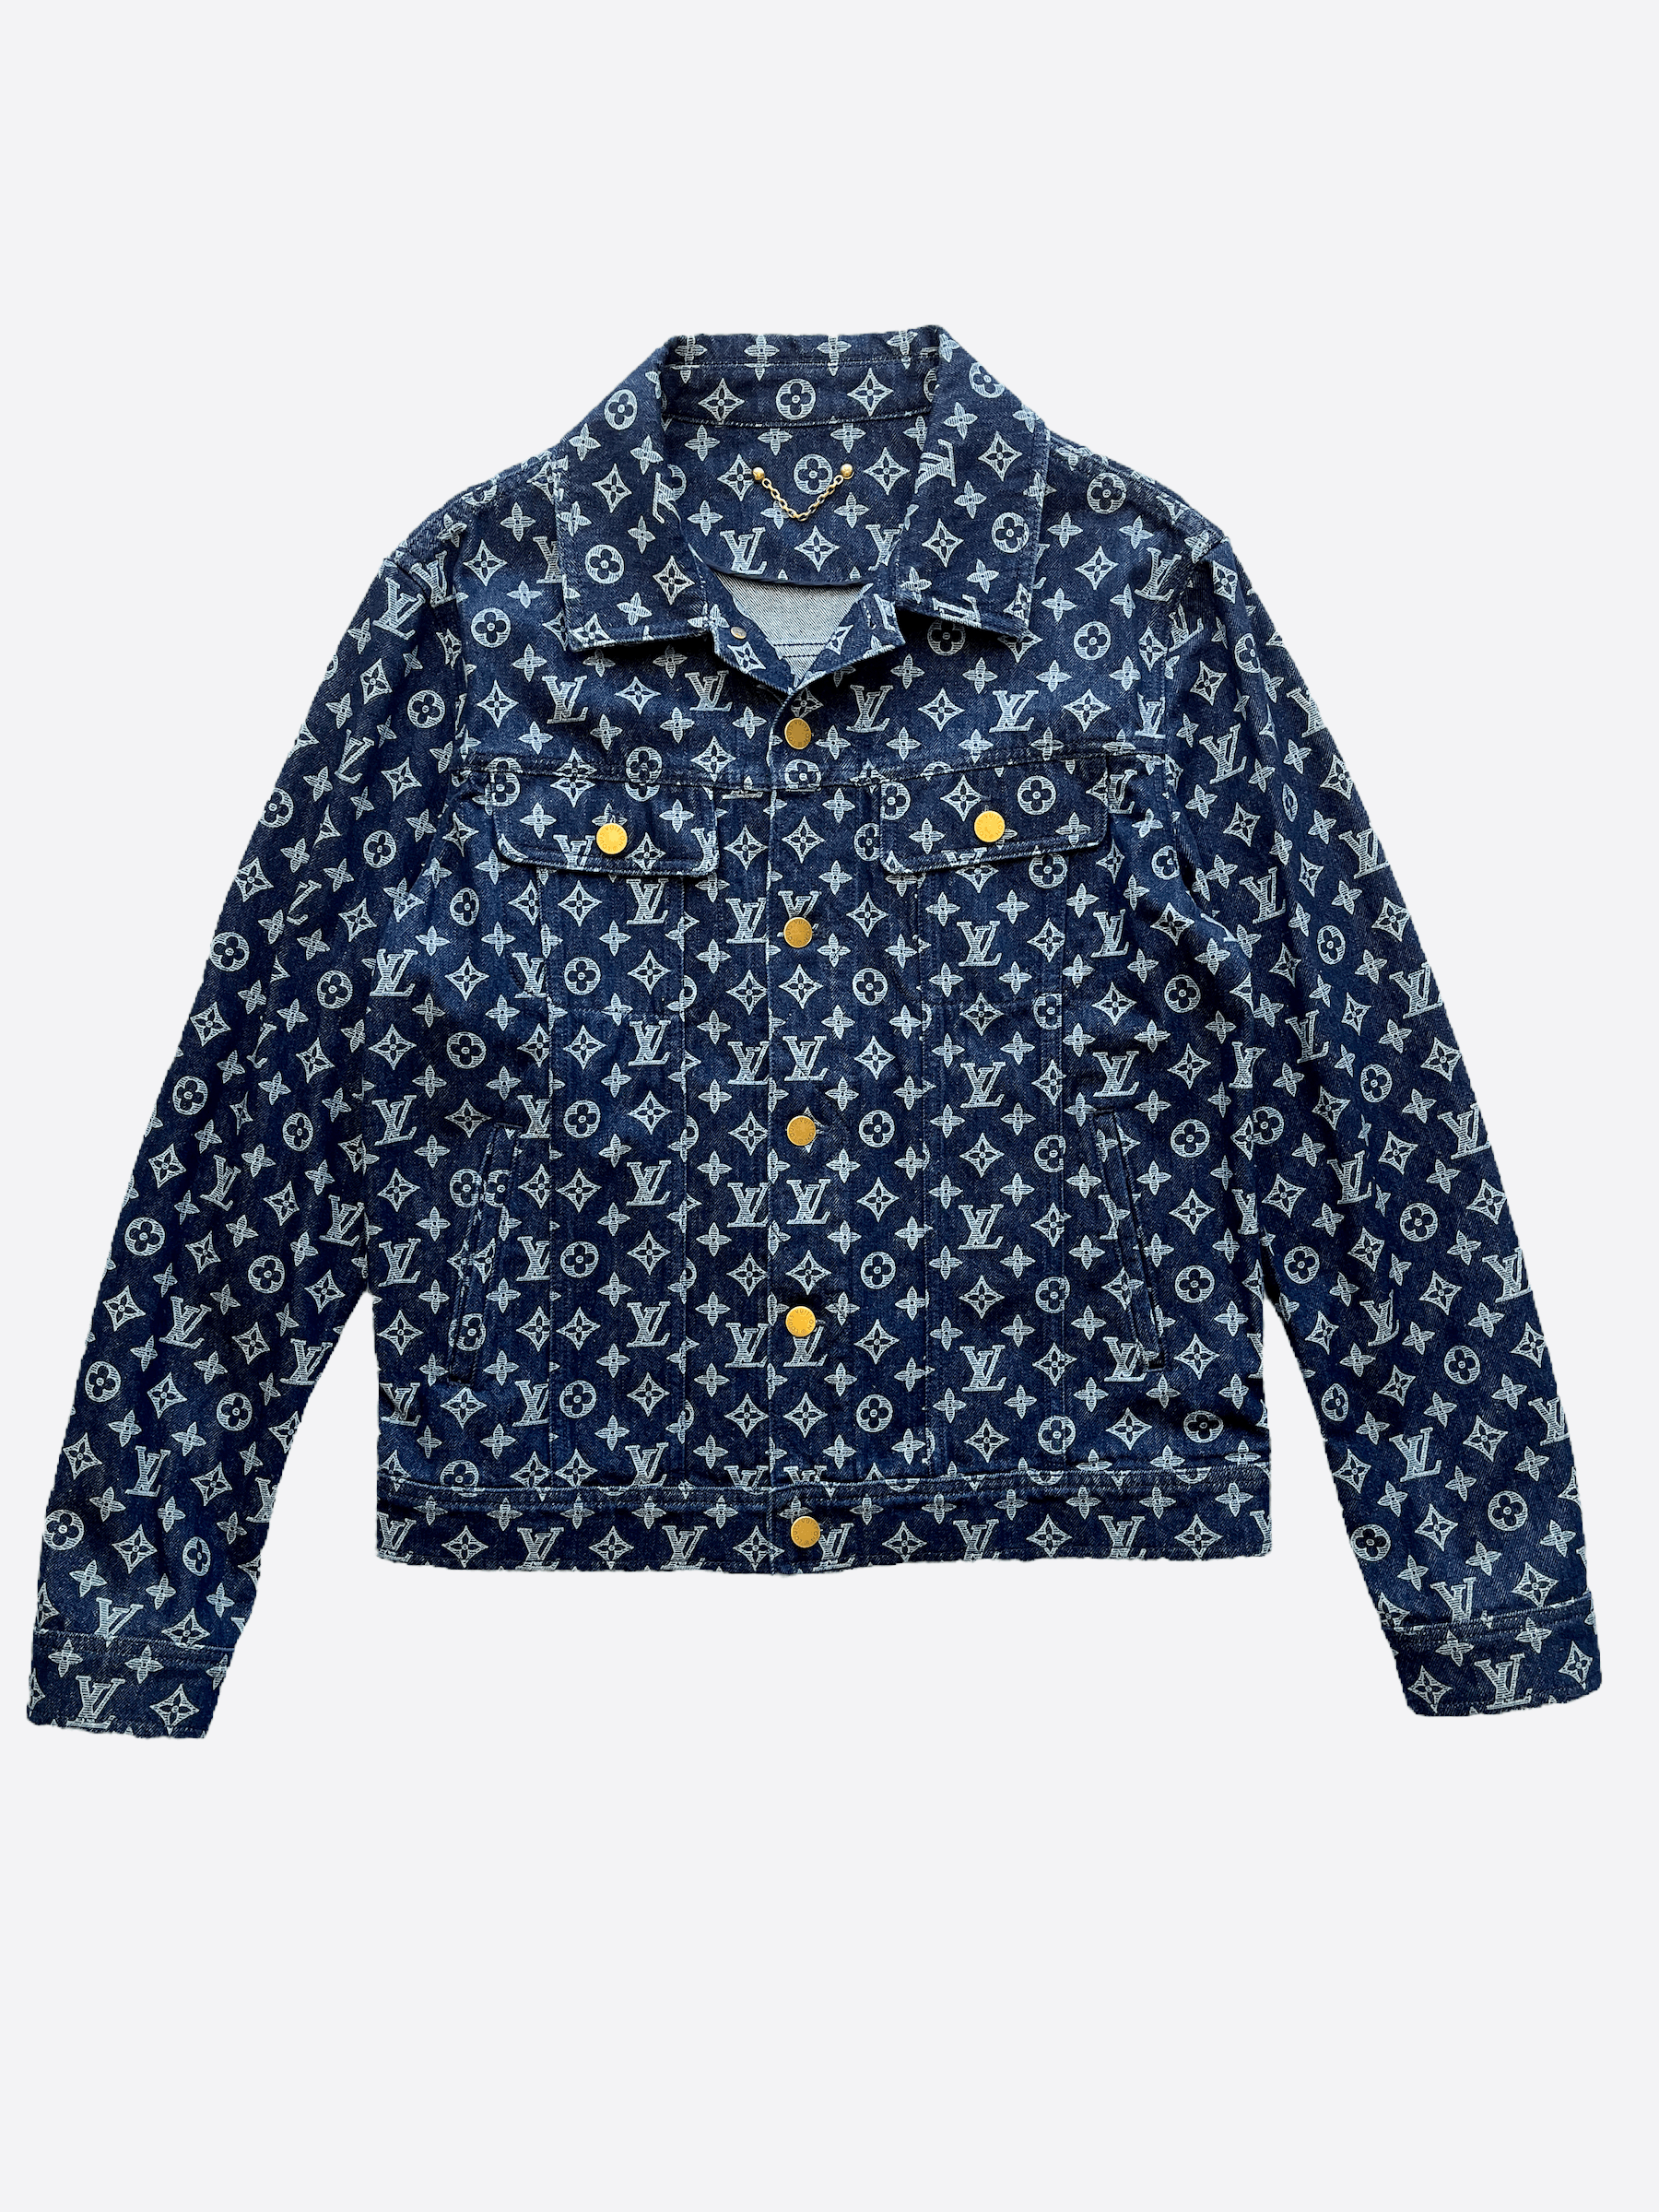 2019 Louis Vuitton men's Monogram Denim Jacket by Virgil Abloh For